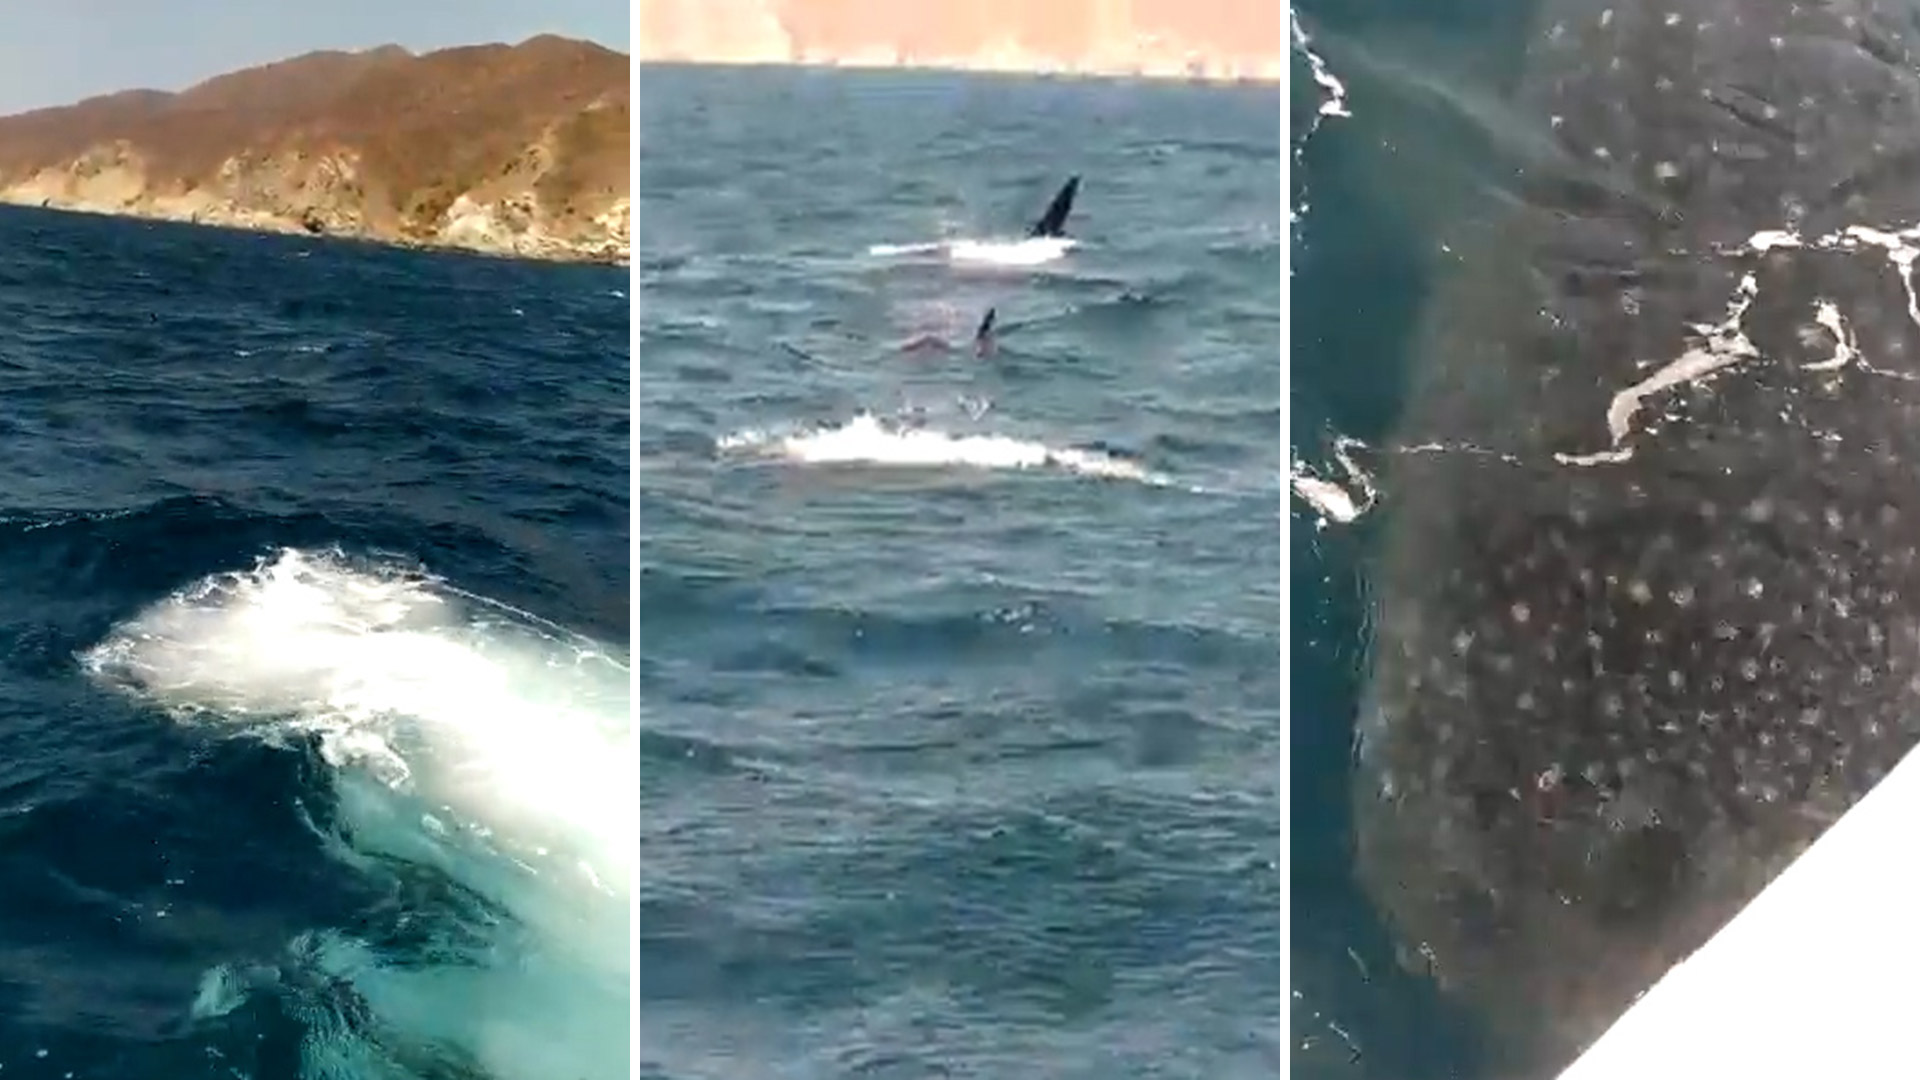 Turistas captaron en video a un tiburón ballena en inmediaciones de una playa en Santa Marta